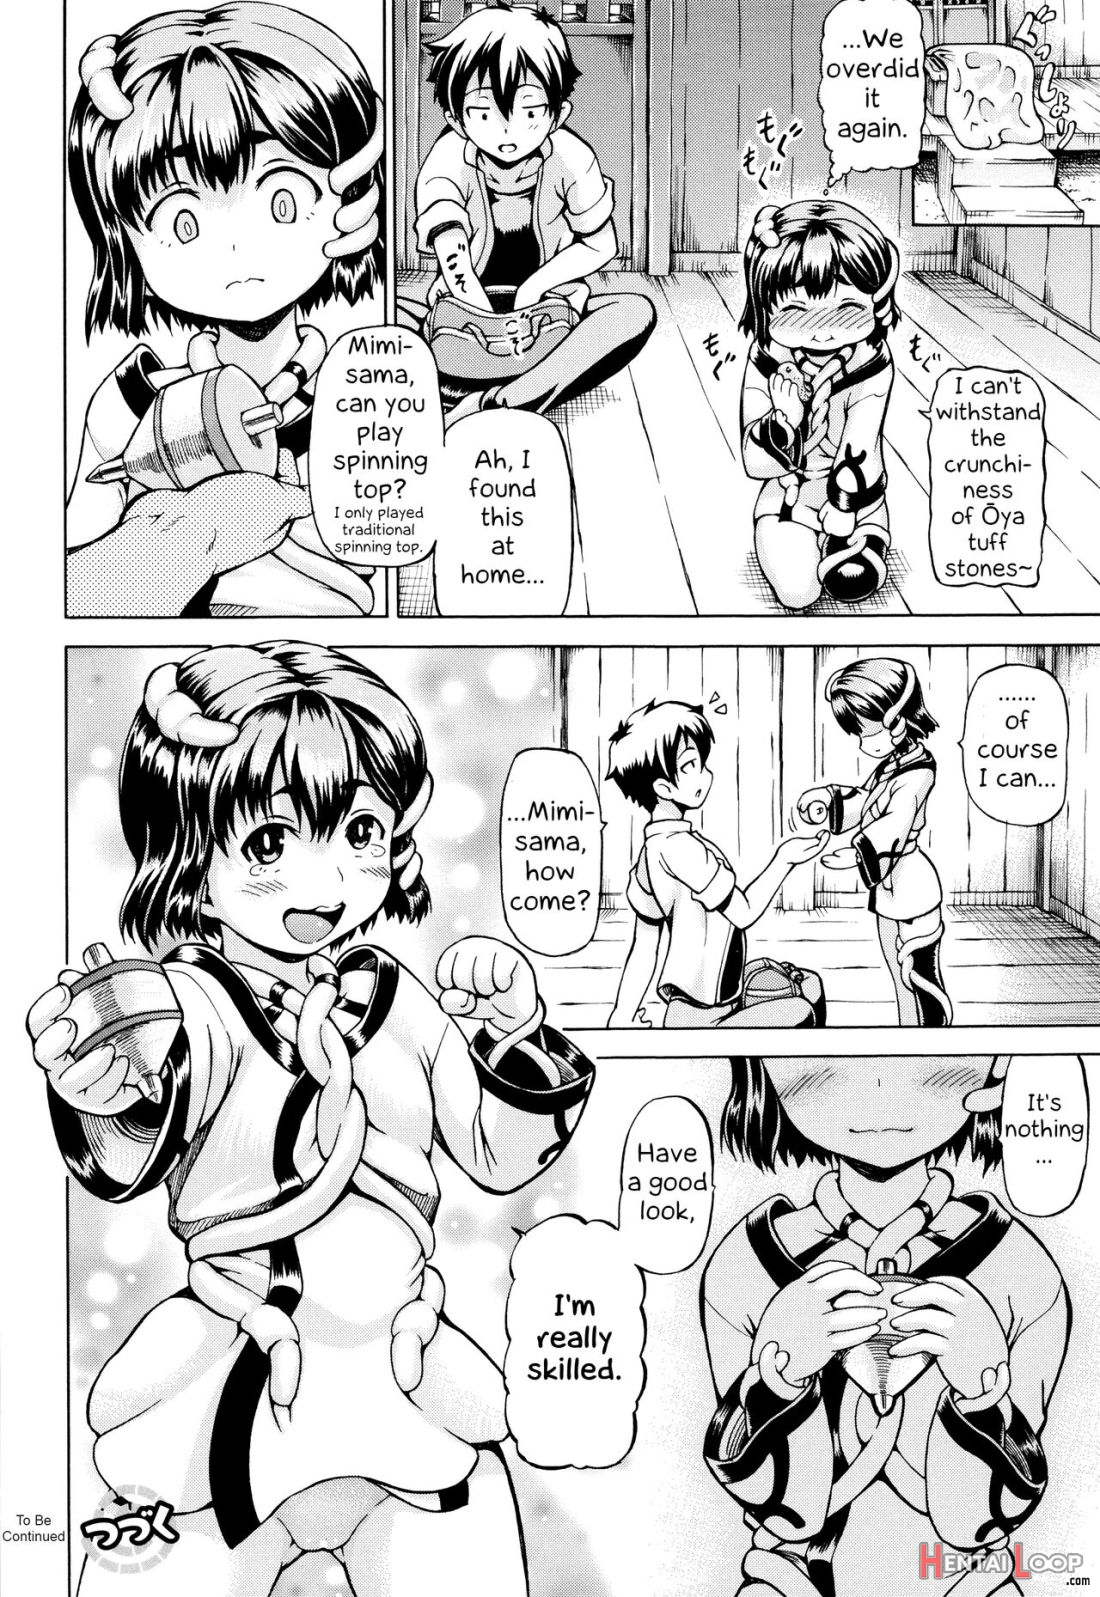 Mimi-sama Okkiku Shite! page 48